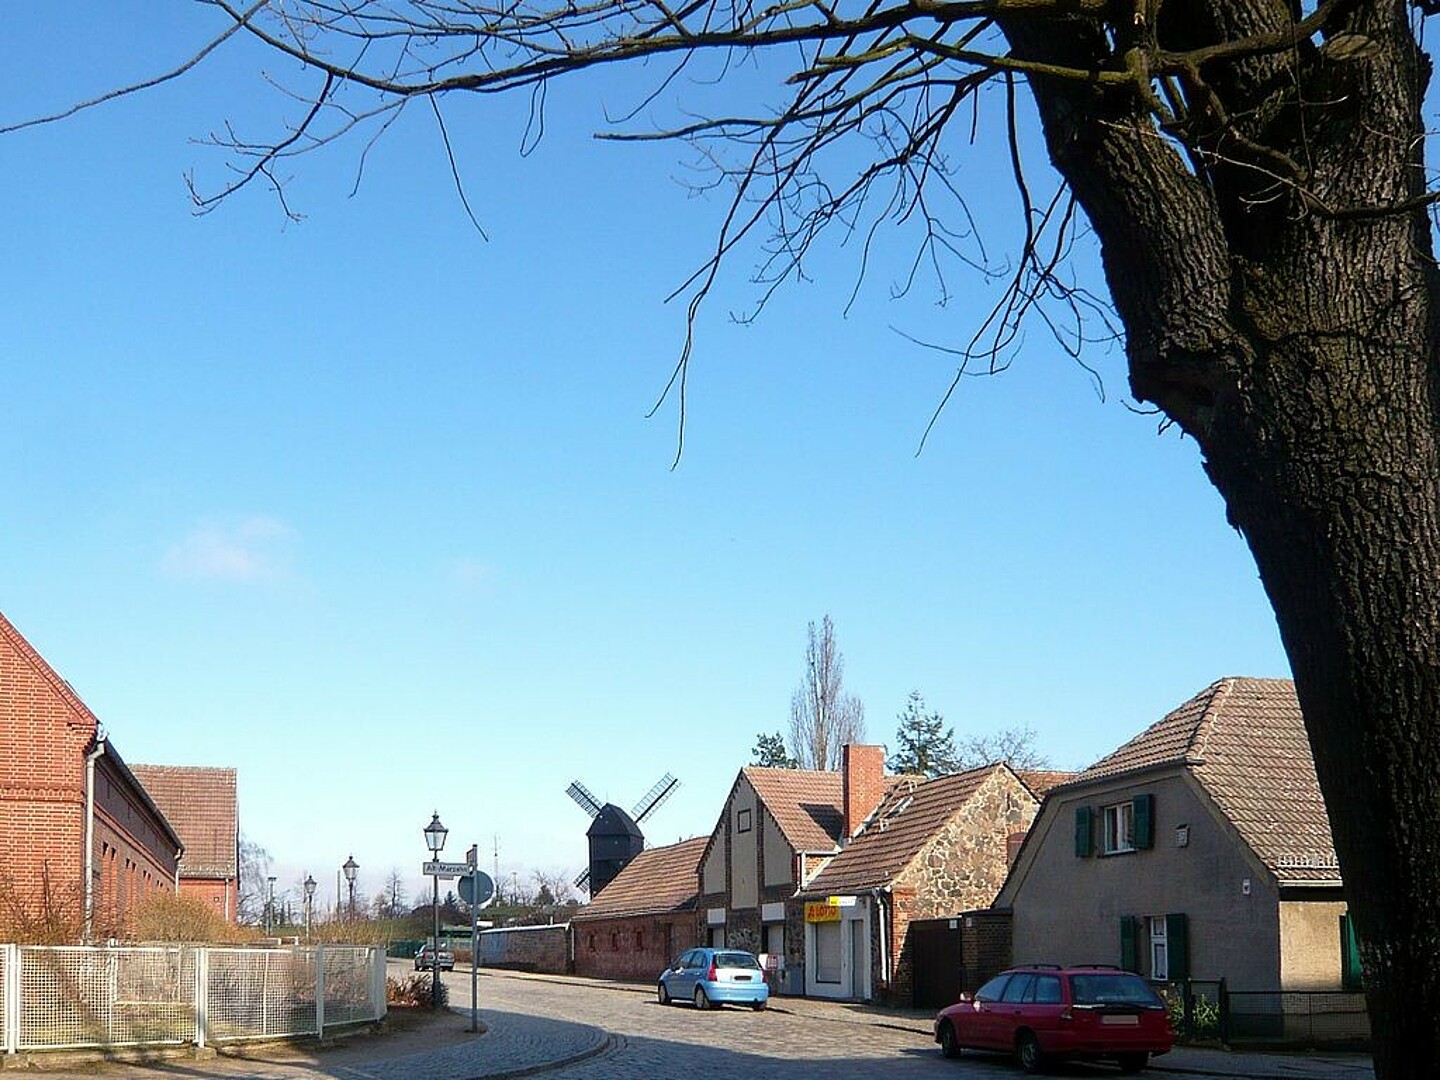 Bild zeigt eine Ecke von Alt-Marzahn. Ein blauer Himmel mit vielen Einfamilienhäusern.